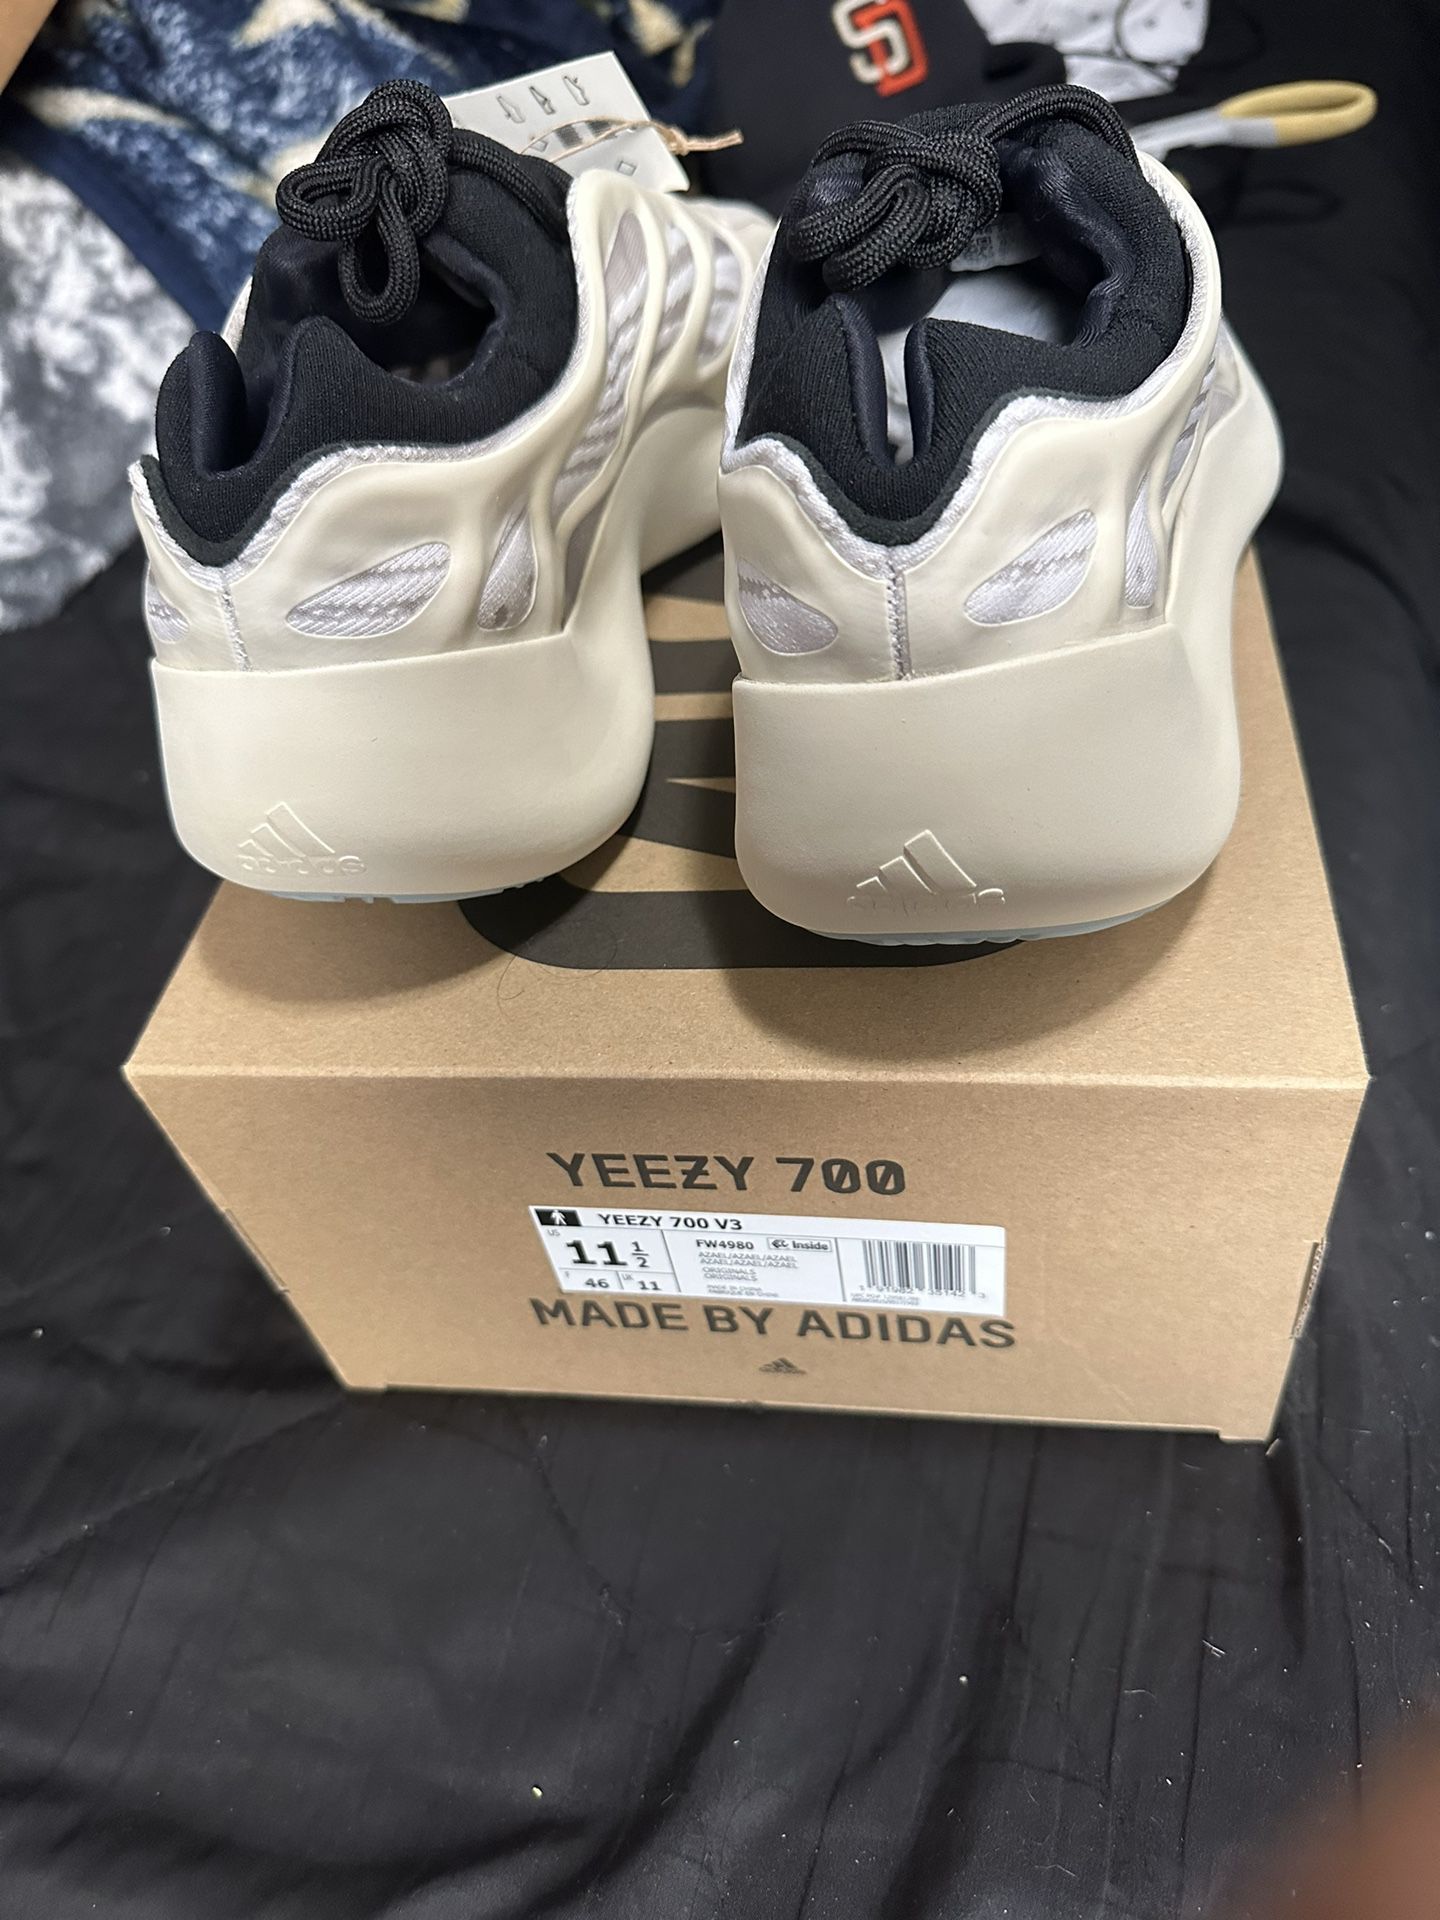 adidas Yeezy 700 V3 Azael – Off The Market LA